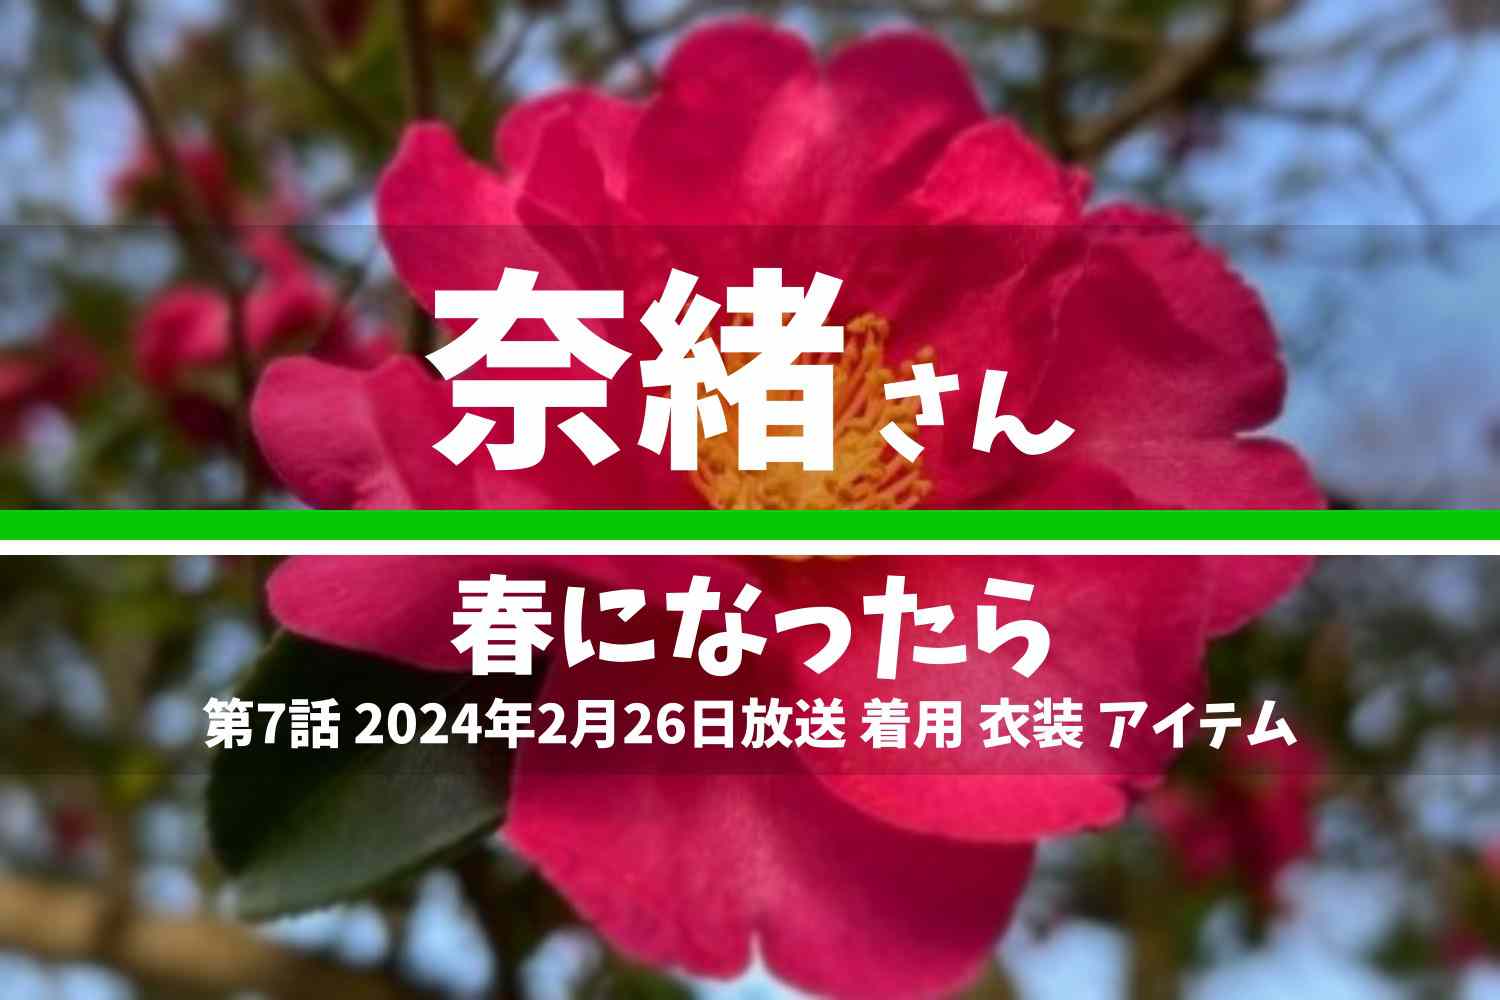 春になったら 奈緒さん テレビドラマ 衣装 2024年2月26日放送